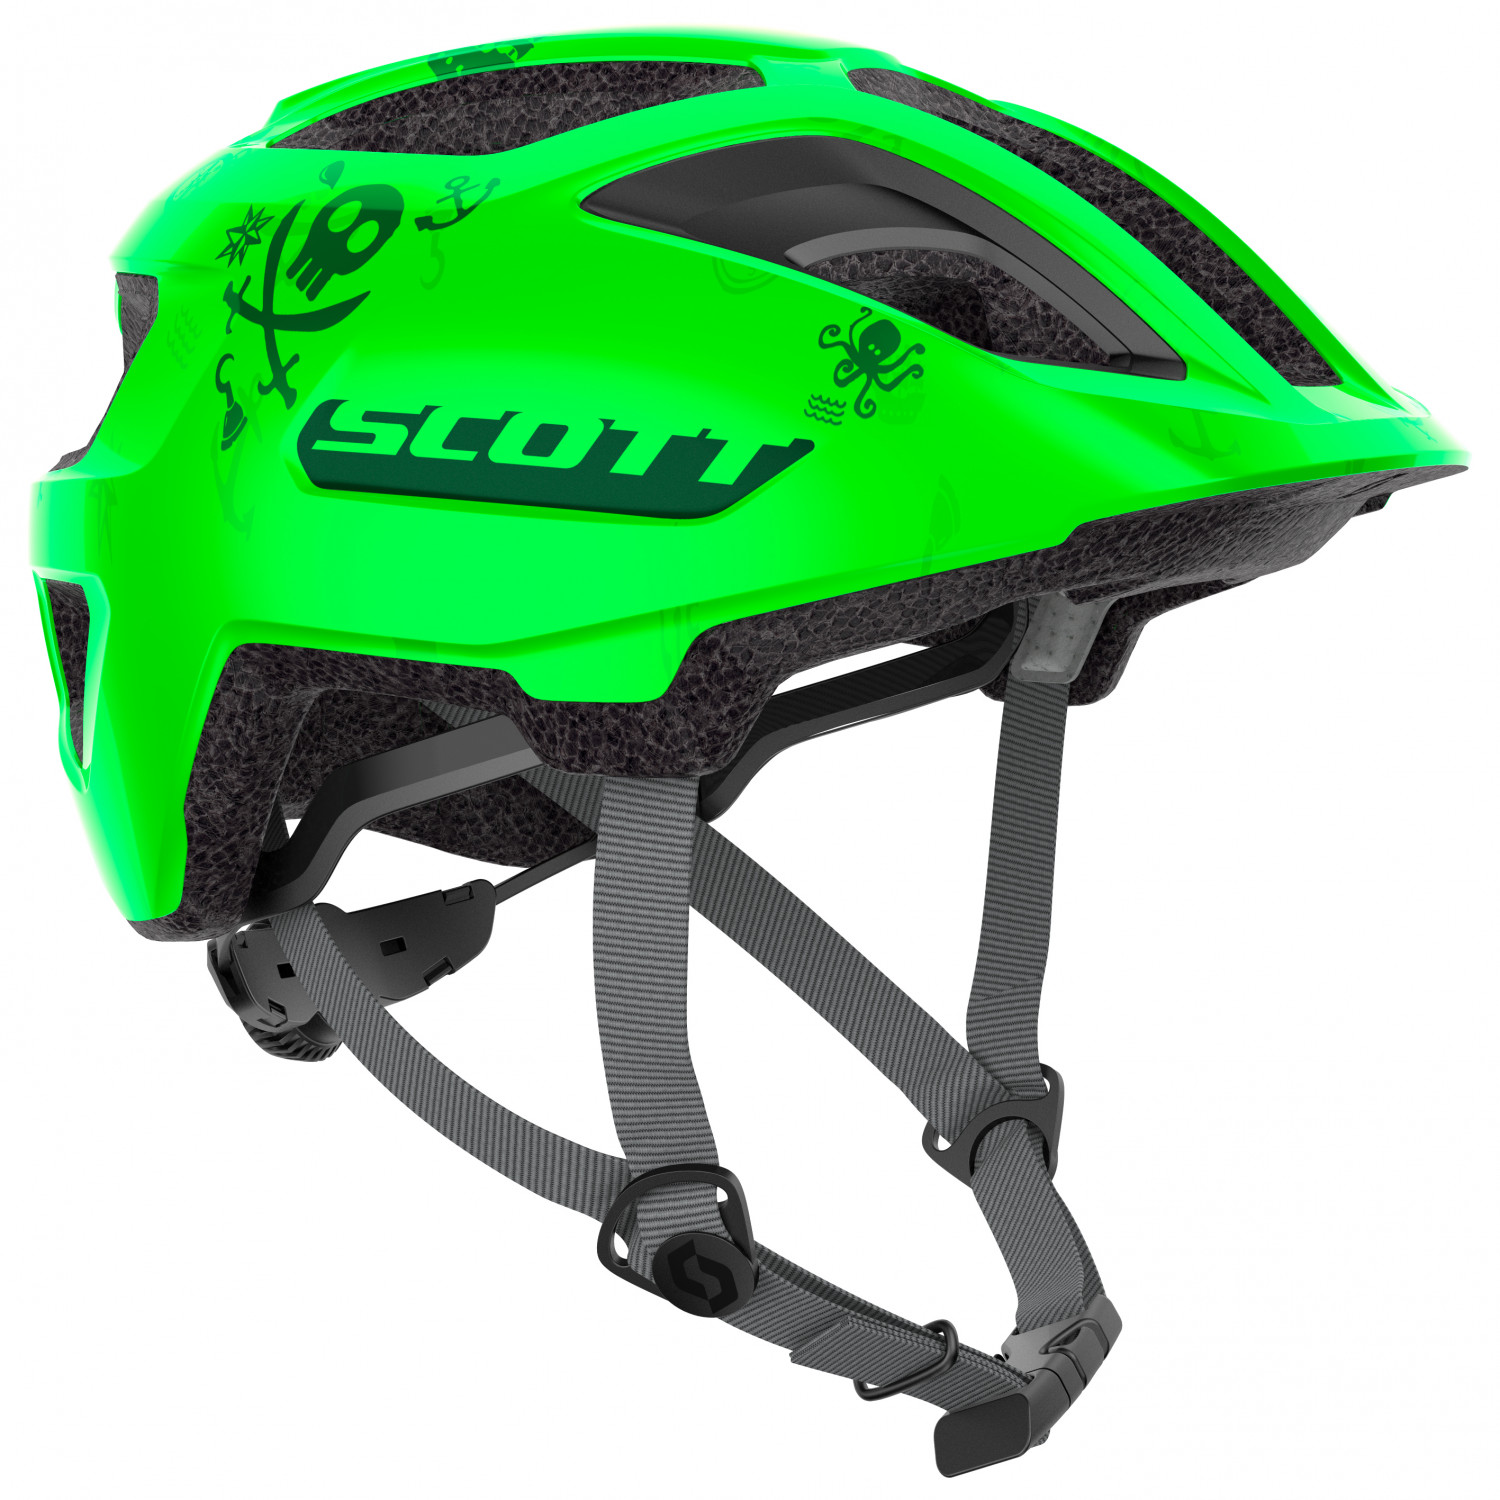 Велосипедный шлем Scott Kid's Helmet Spunto (CE) Junior, цвет Fluo Green шлем scott spunto kid ce atlantic blue